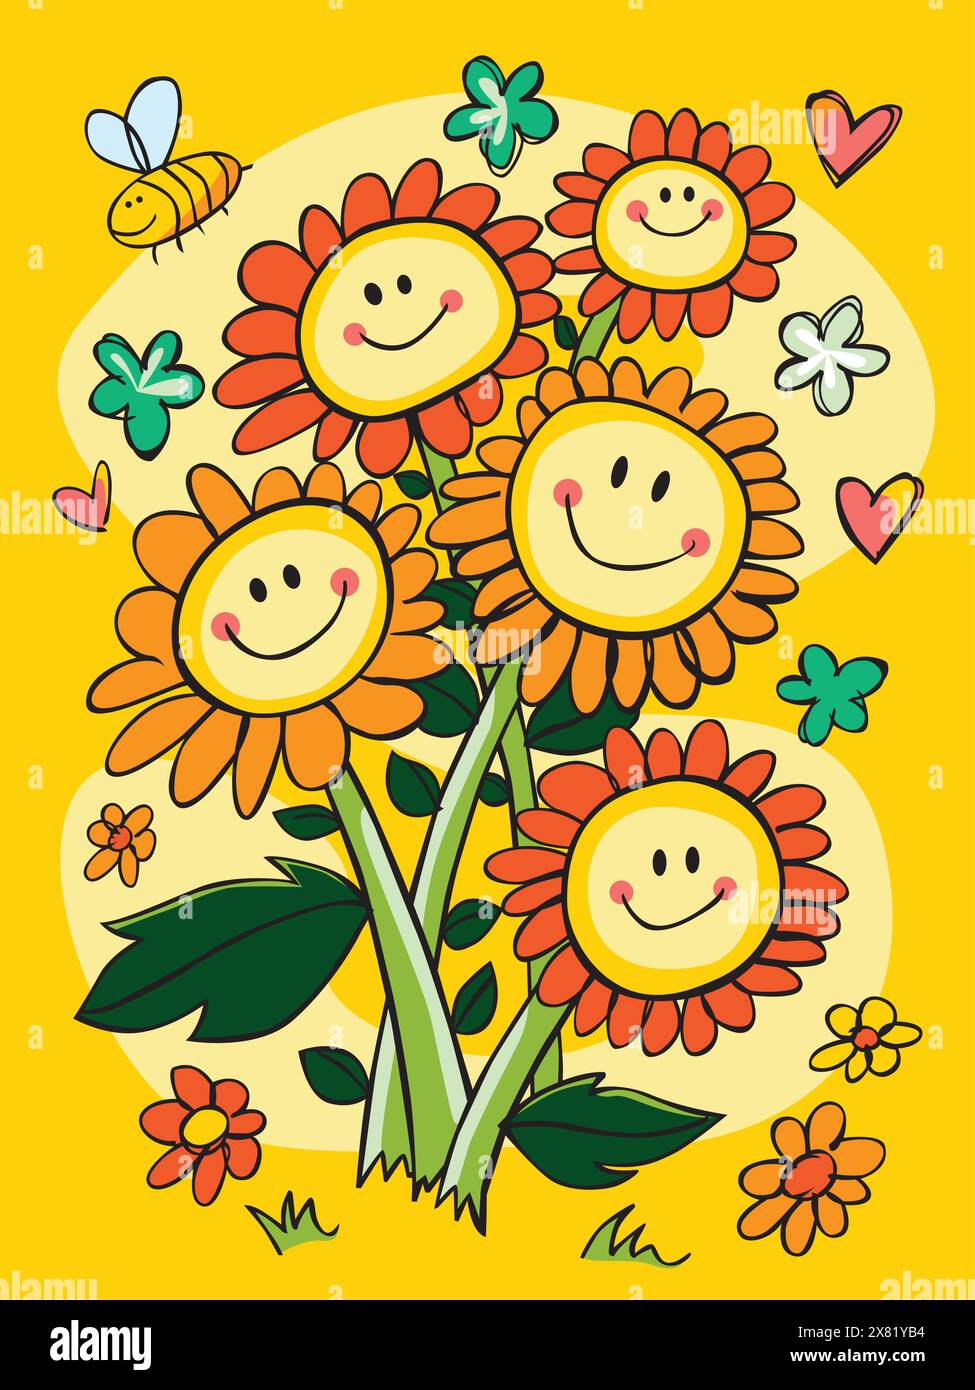 Vektor Bunte Hand gezeichnete Smiley Gesicht Blume Blumenstrauß Illustration mit Herzen und kurvigen Sternen. Geeignet für Grußkarten und Wandbilder. Stock Vektor